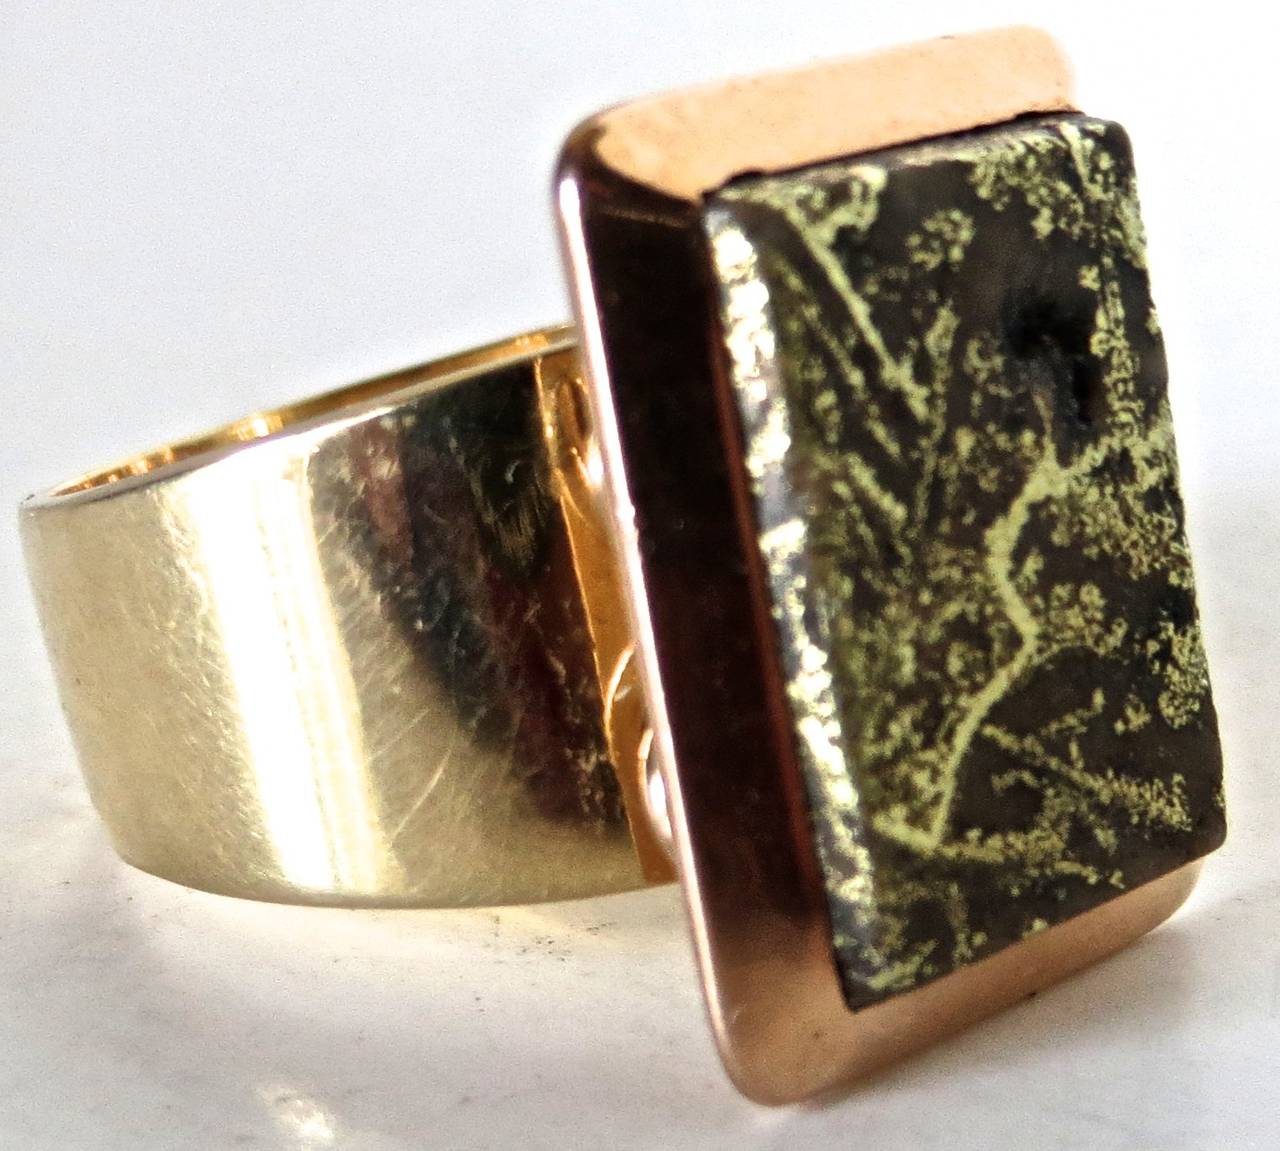 La bague rectangulaire en quartz d'or avec une bordure biseautée en or 18 carats, vers 1875, et est montée sur un anneau plus tardif (contemporain) en or 14 carats. Il s'agit d'une bague pour homme de grande taille, très attrayante. L'anneau en or